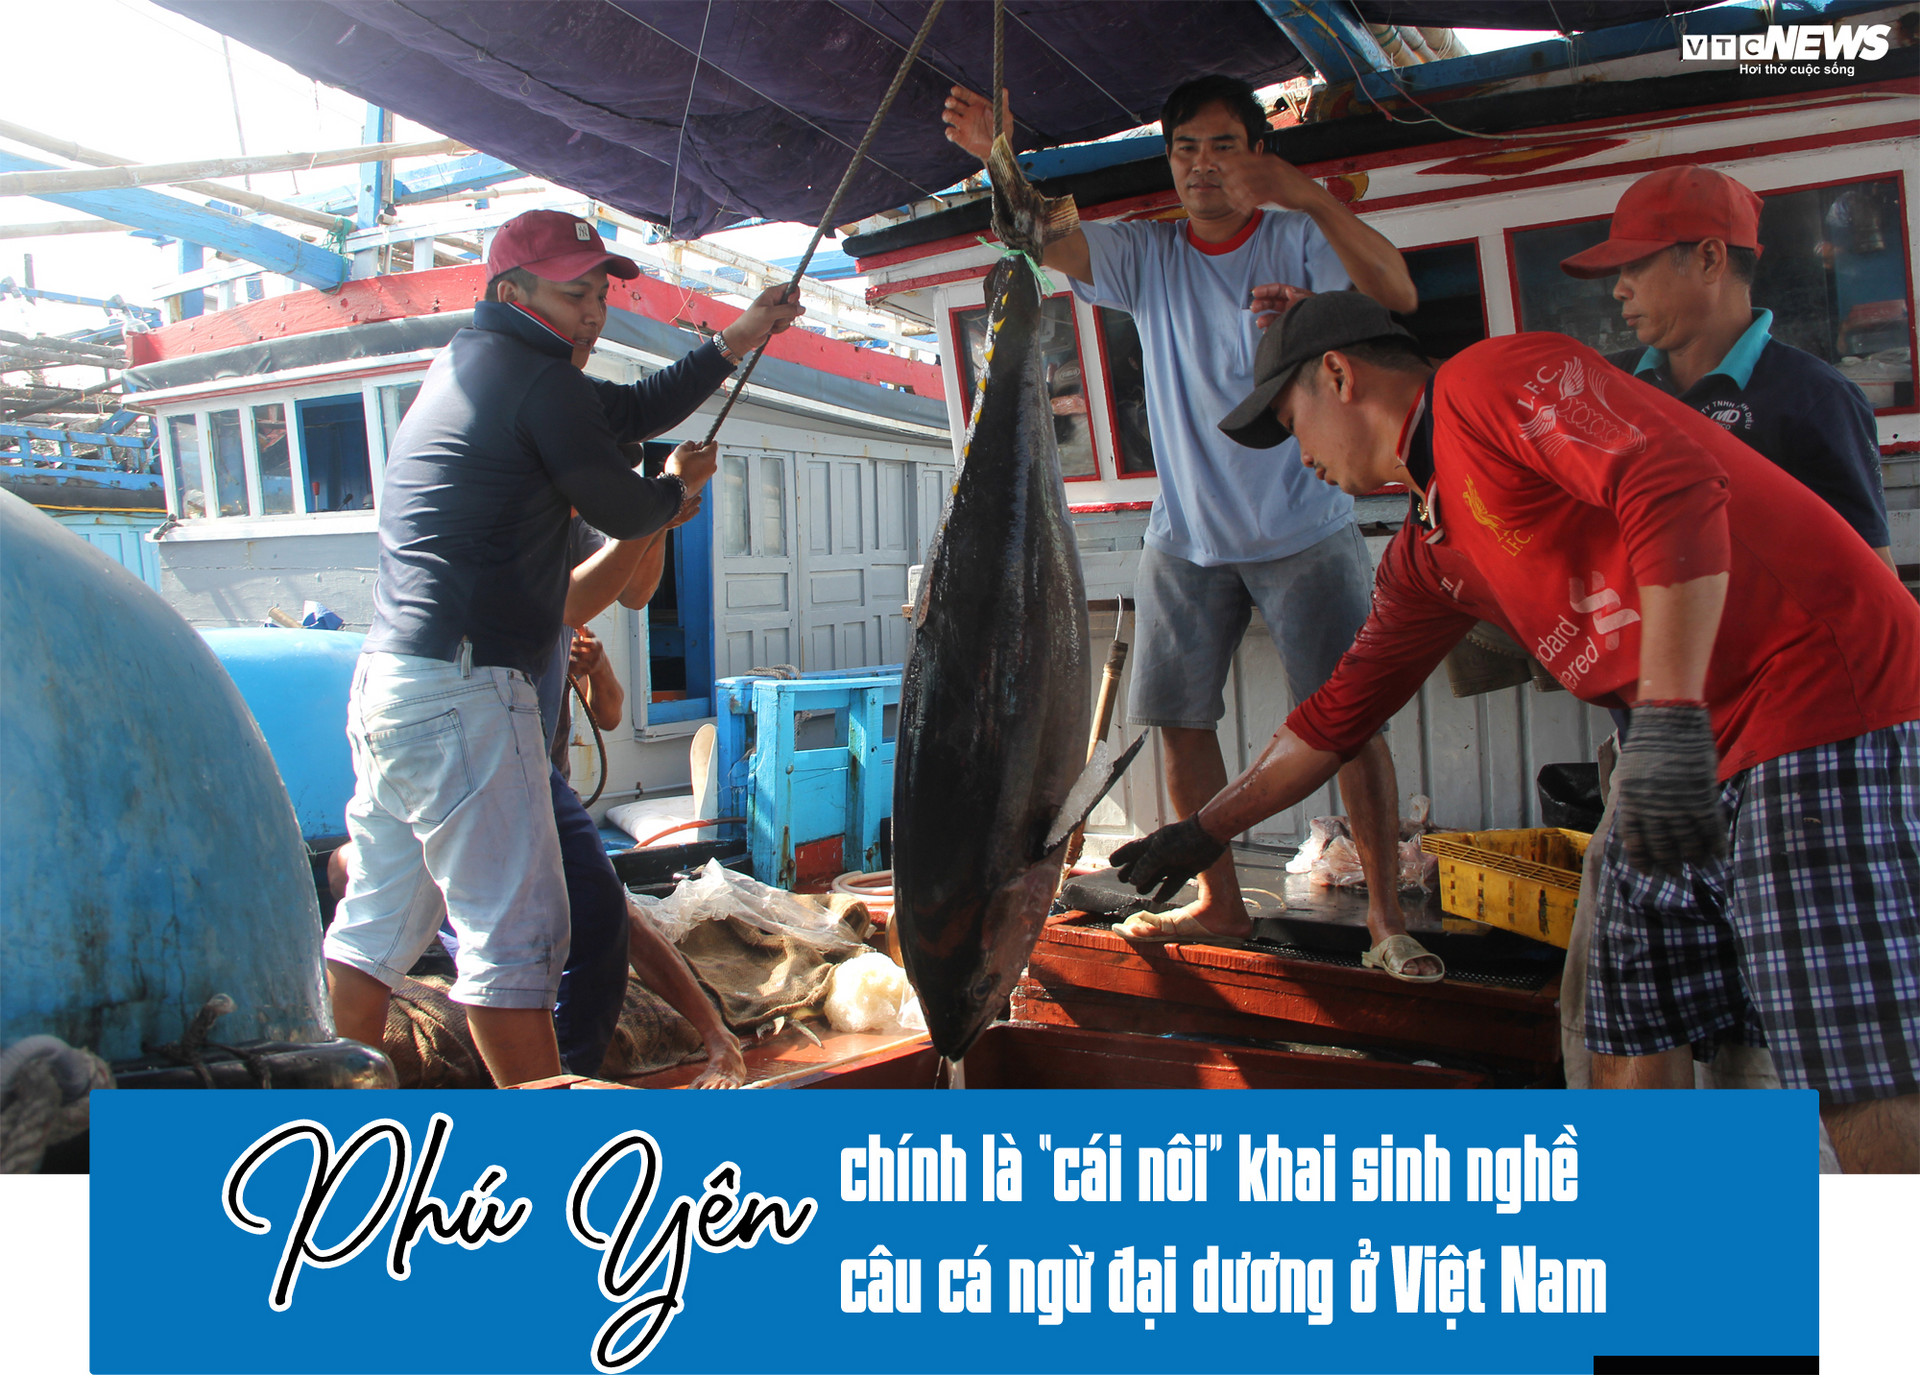 Nỗi buồn của ngư phủ nơi khai sinh nghề câu cá ngừ đại dương ở Việt Nam-3